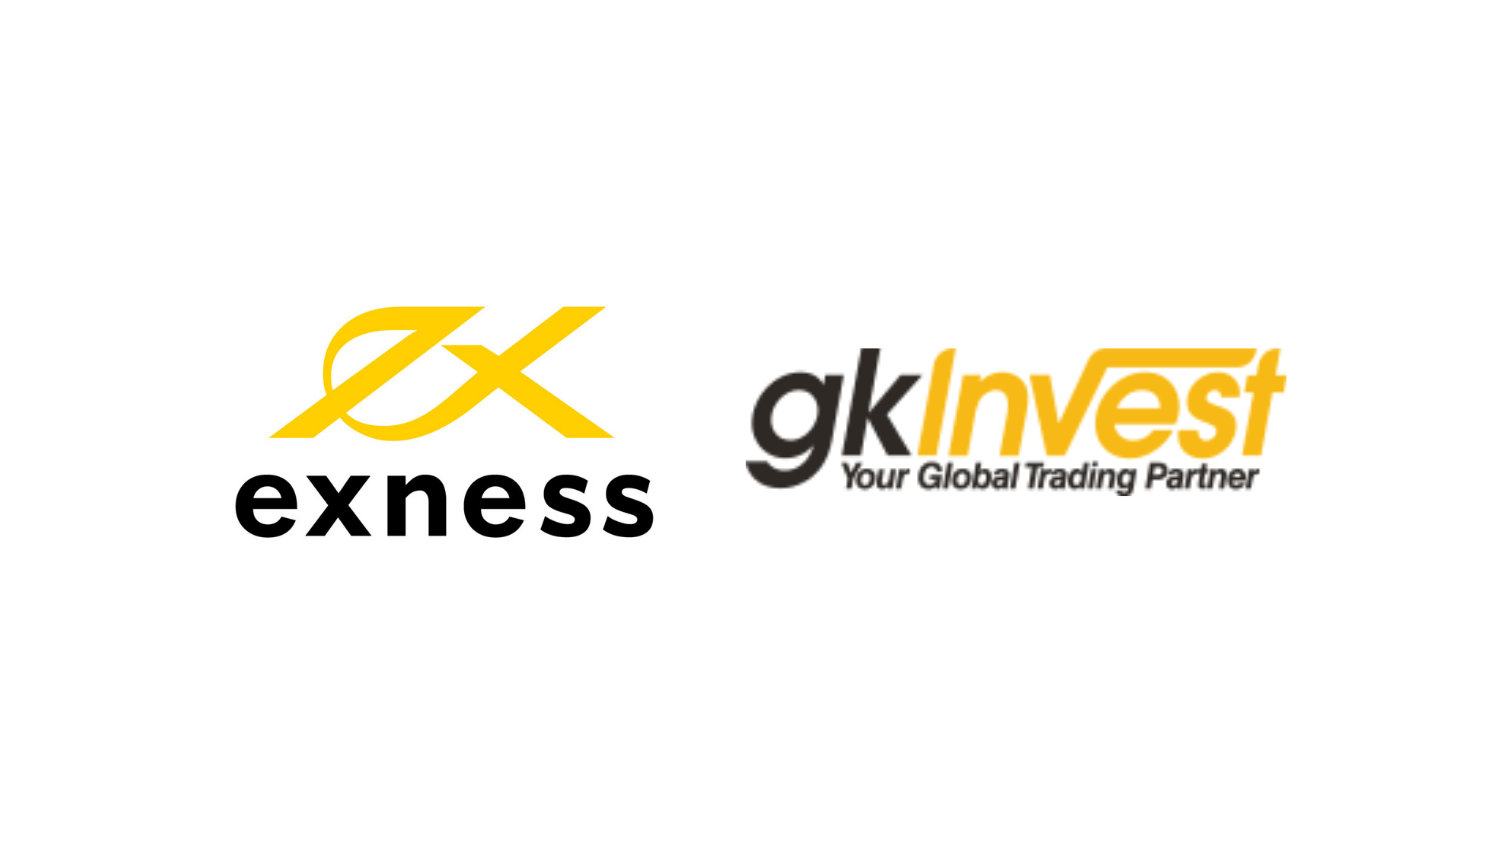 Perbedaan Exness dan GKInvest Broker